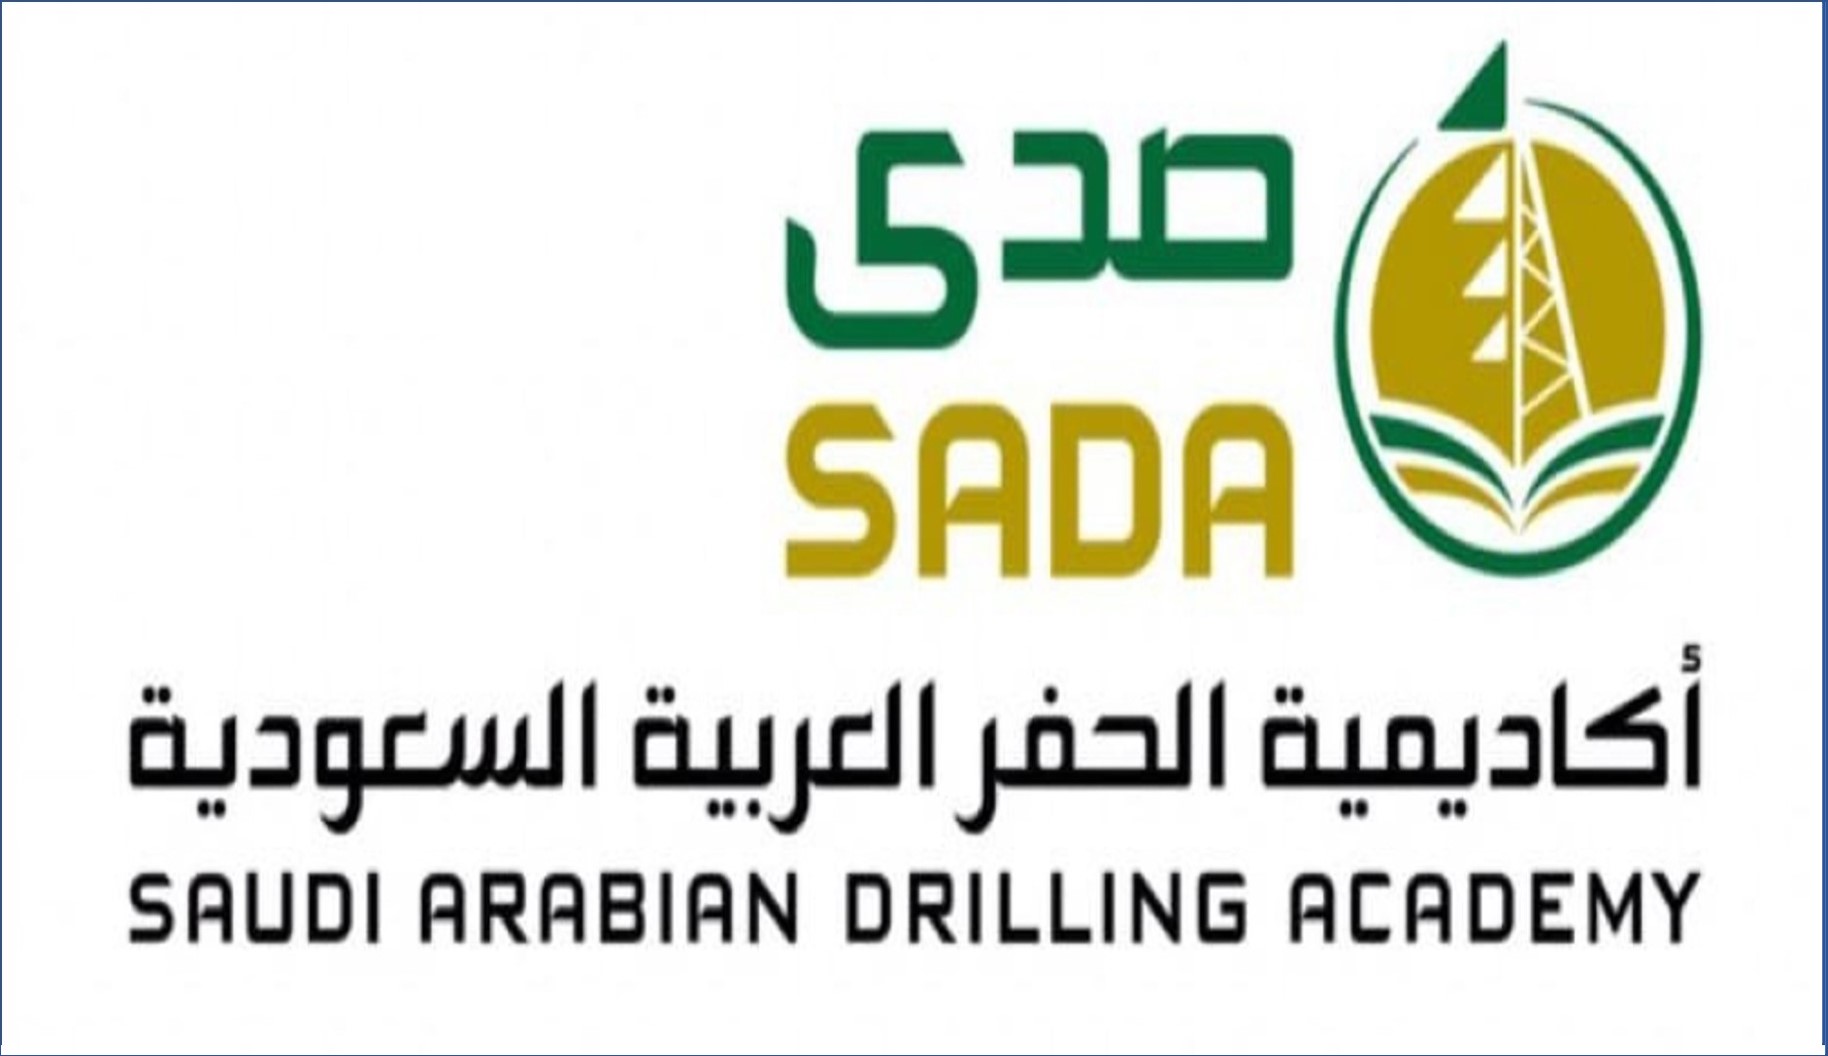 أكاديمية الحفر العربية تعلن عن برنامج تدريب مبتدئ بالتوظيف